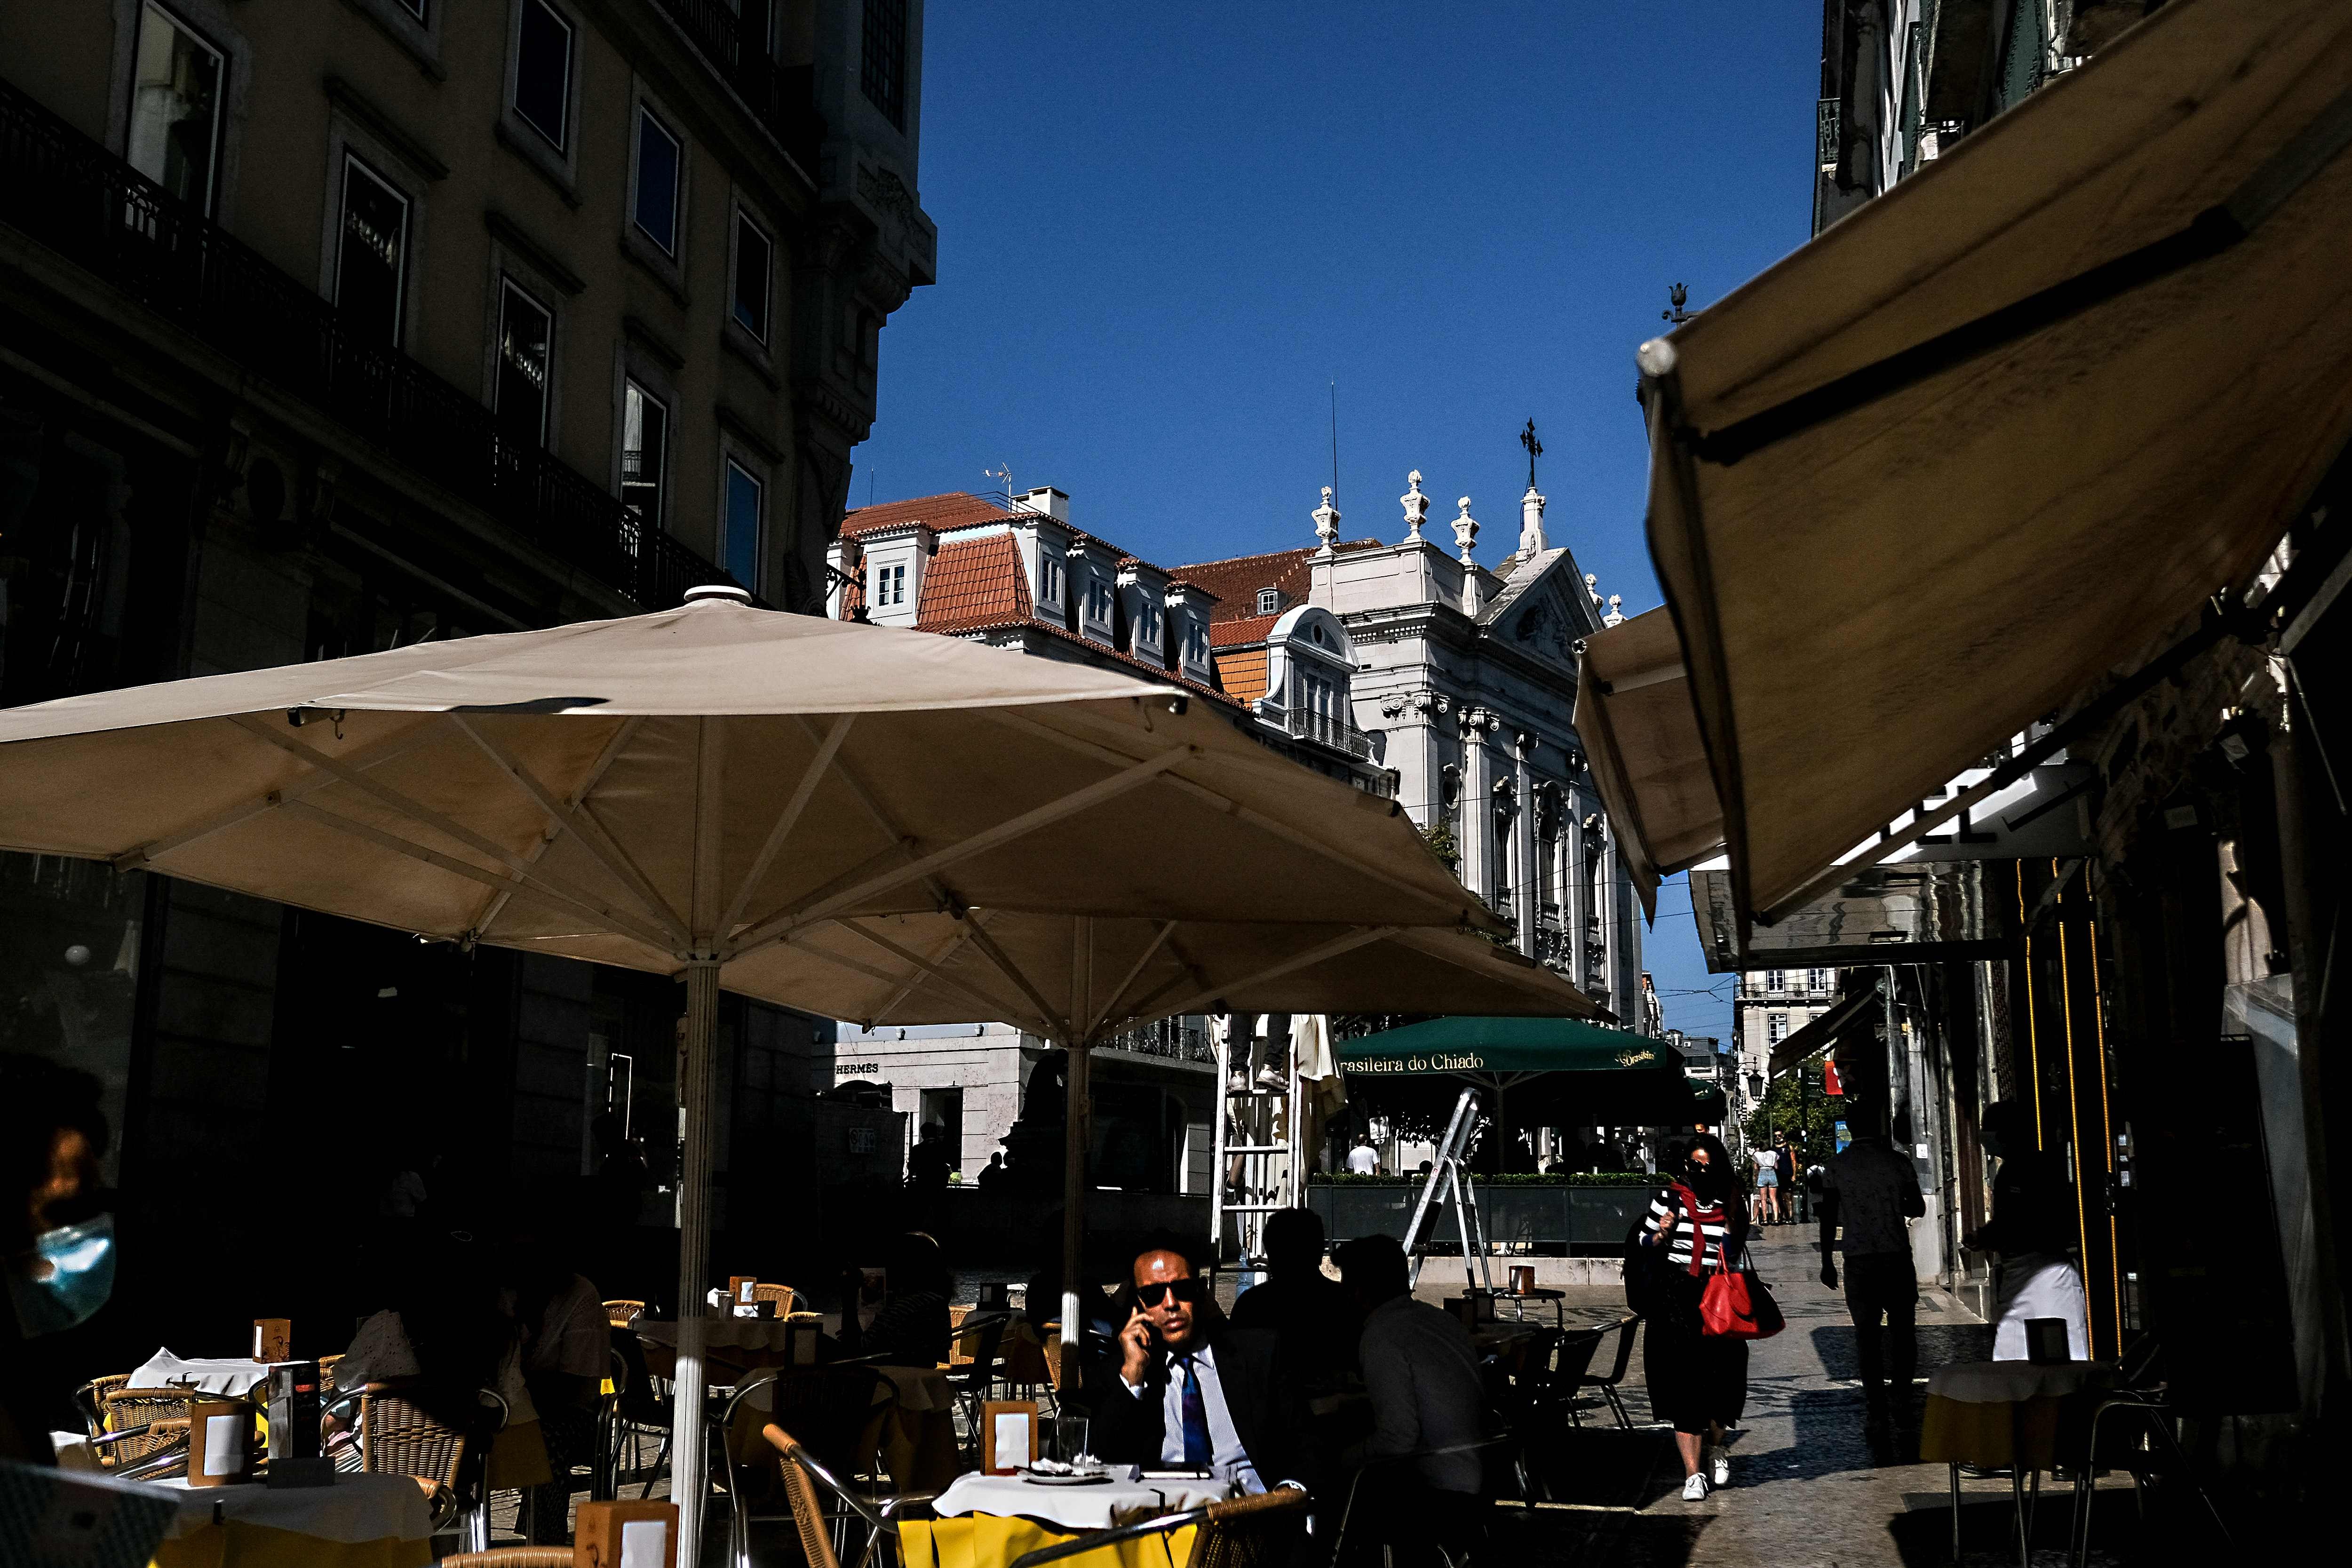 Movimentação na área externa de um café no Chiado, Lisboa